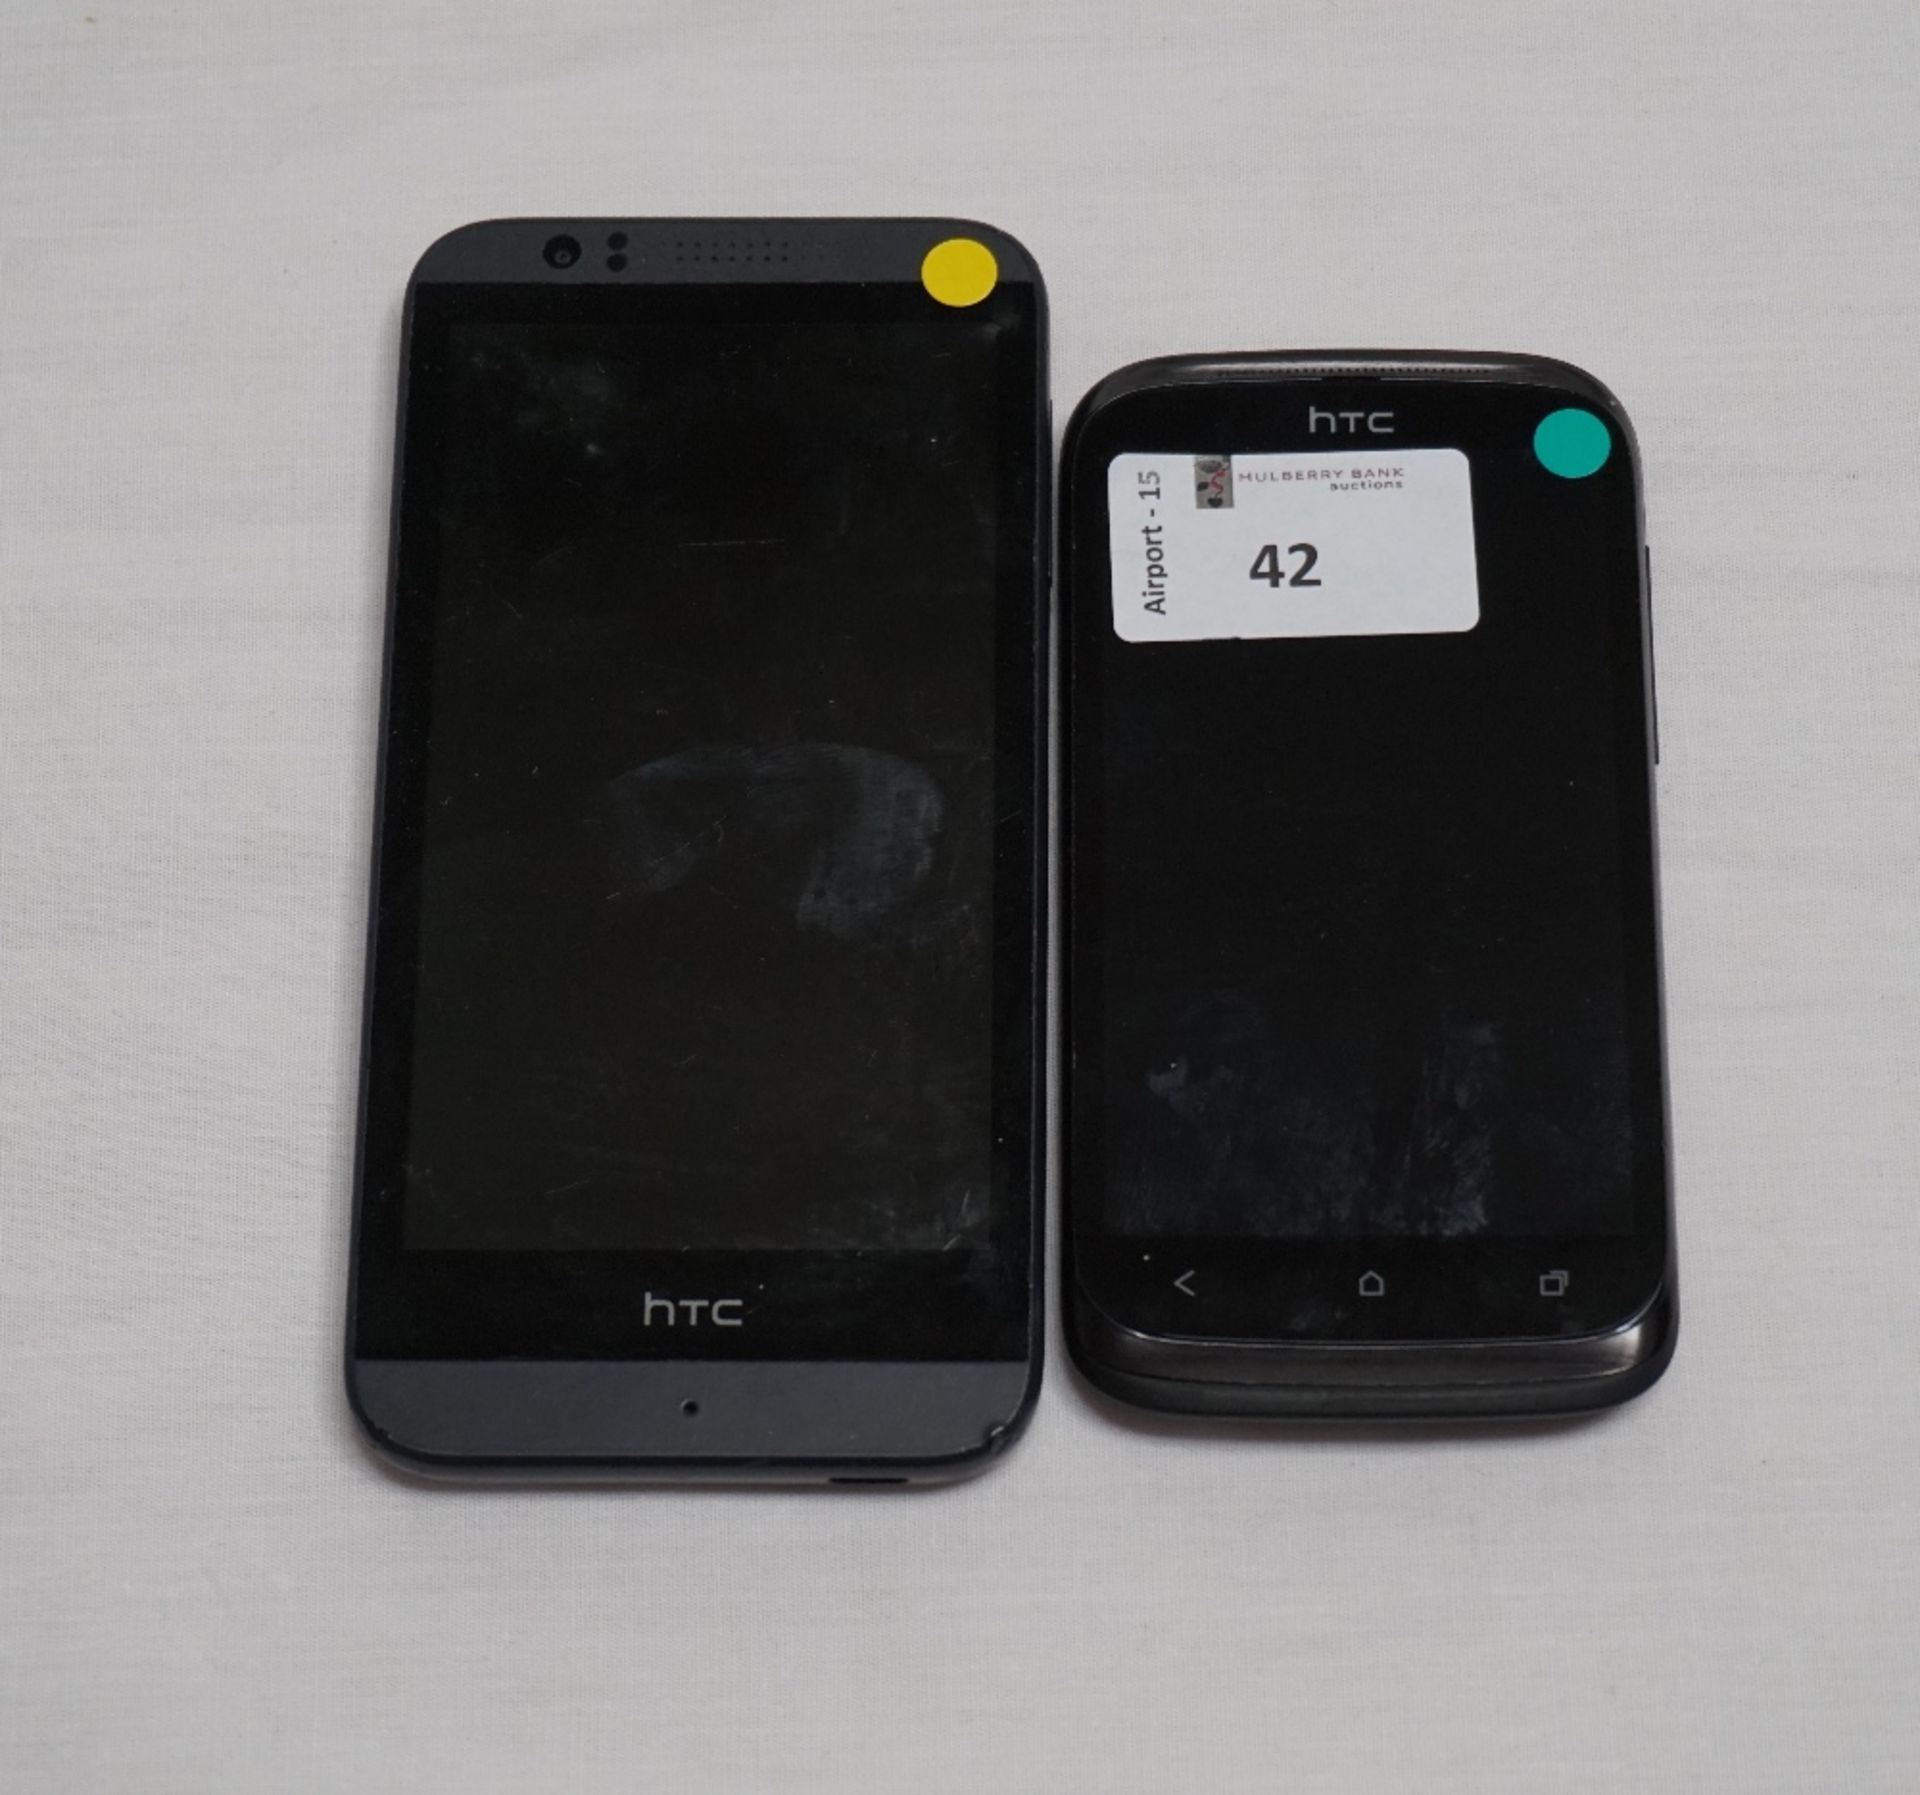 TWO HTC SMARTPHONES